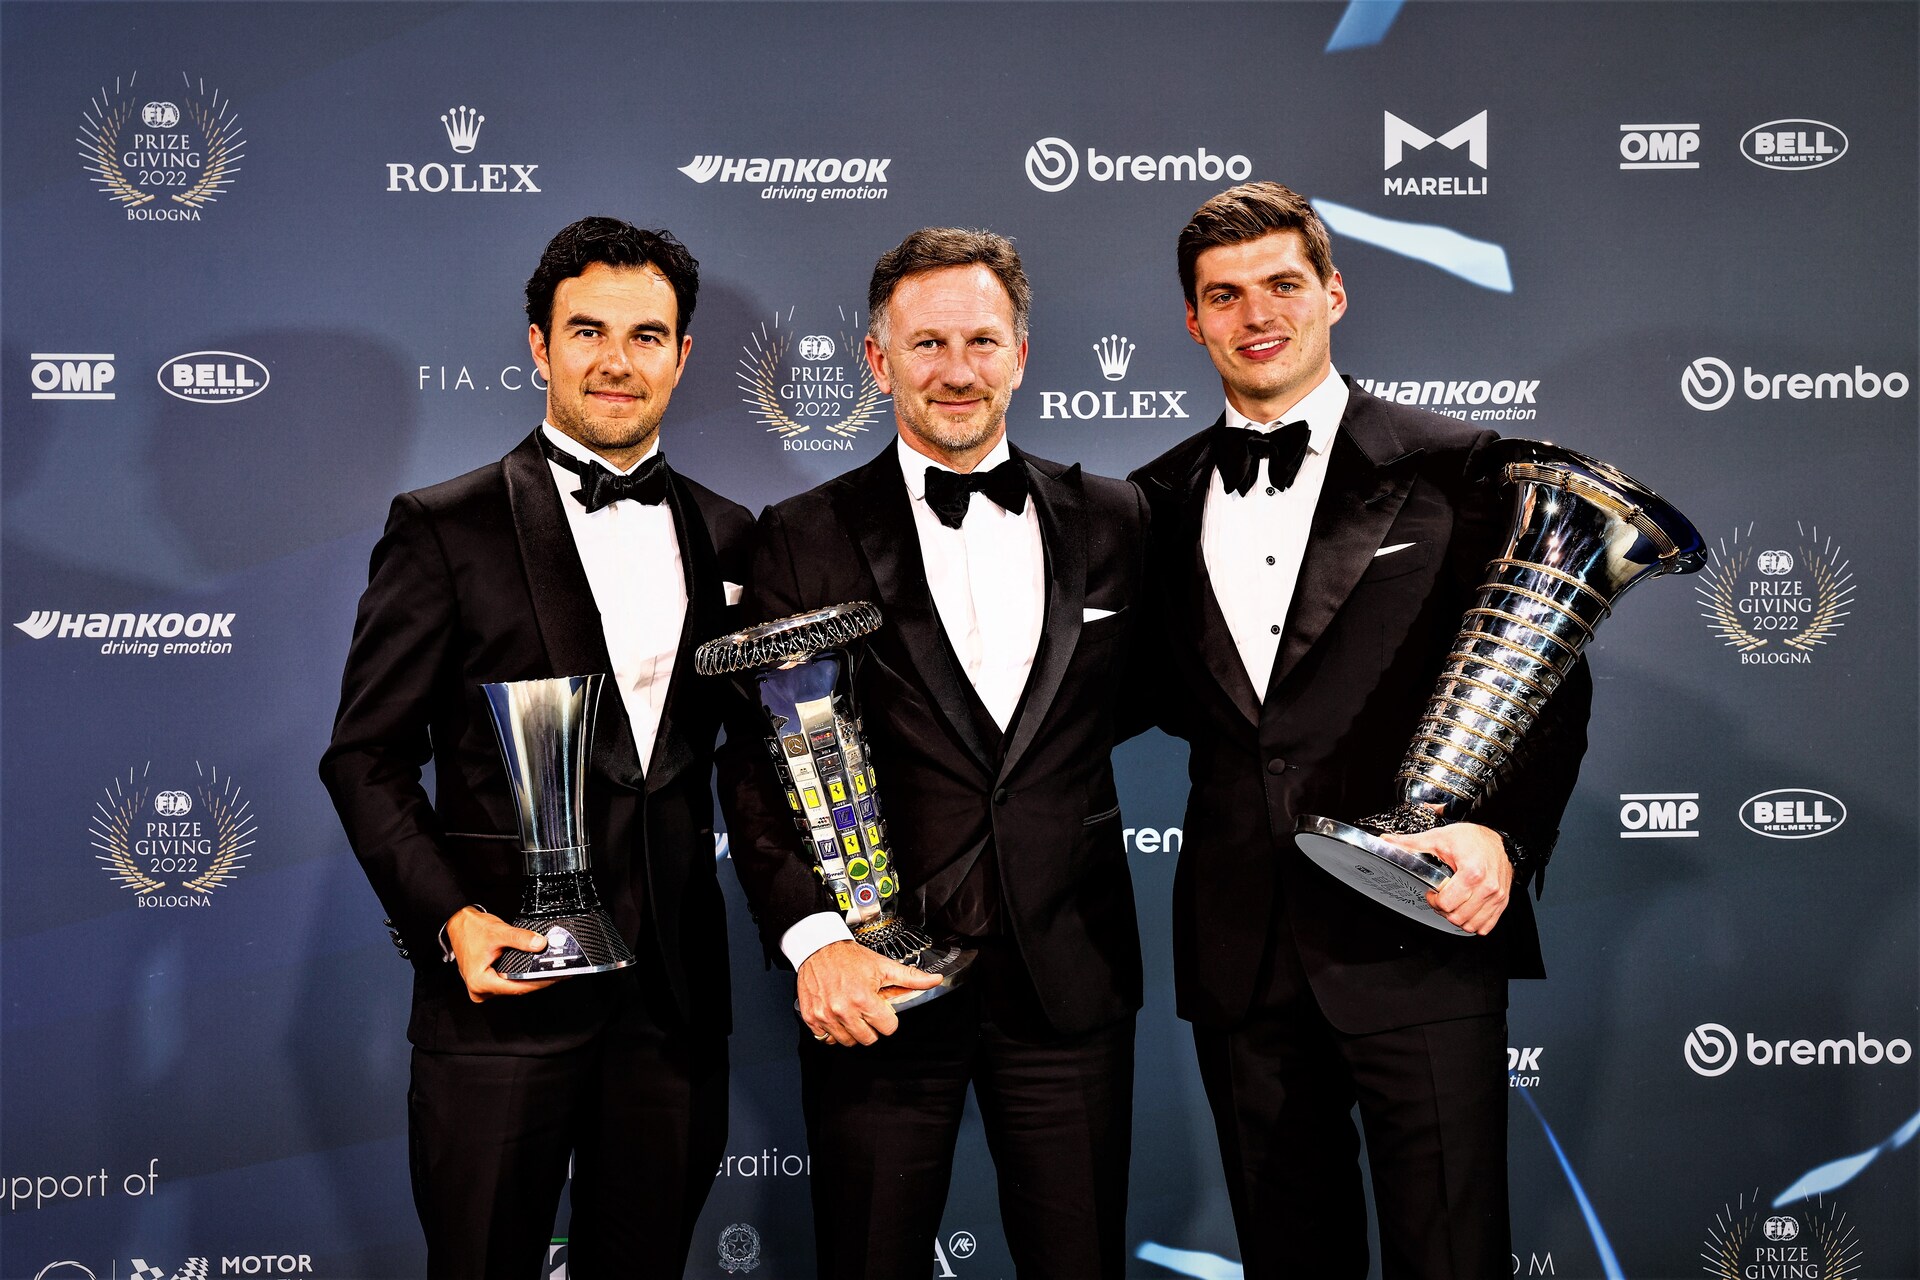 ინოვაცია მოტოსპორტში: 2022 წლის FIA დაჯილდოების ცერემონია ბოლონიაში კრისტიან ჰორნერი, Red Bull Racing გუნდის მთავარი ფორმულა 1-ში, მძღოლებს სერხიო პერესსა და მაქს ვერსტაპენს შორის (ფოტო: FIA Media)